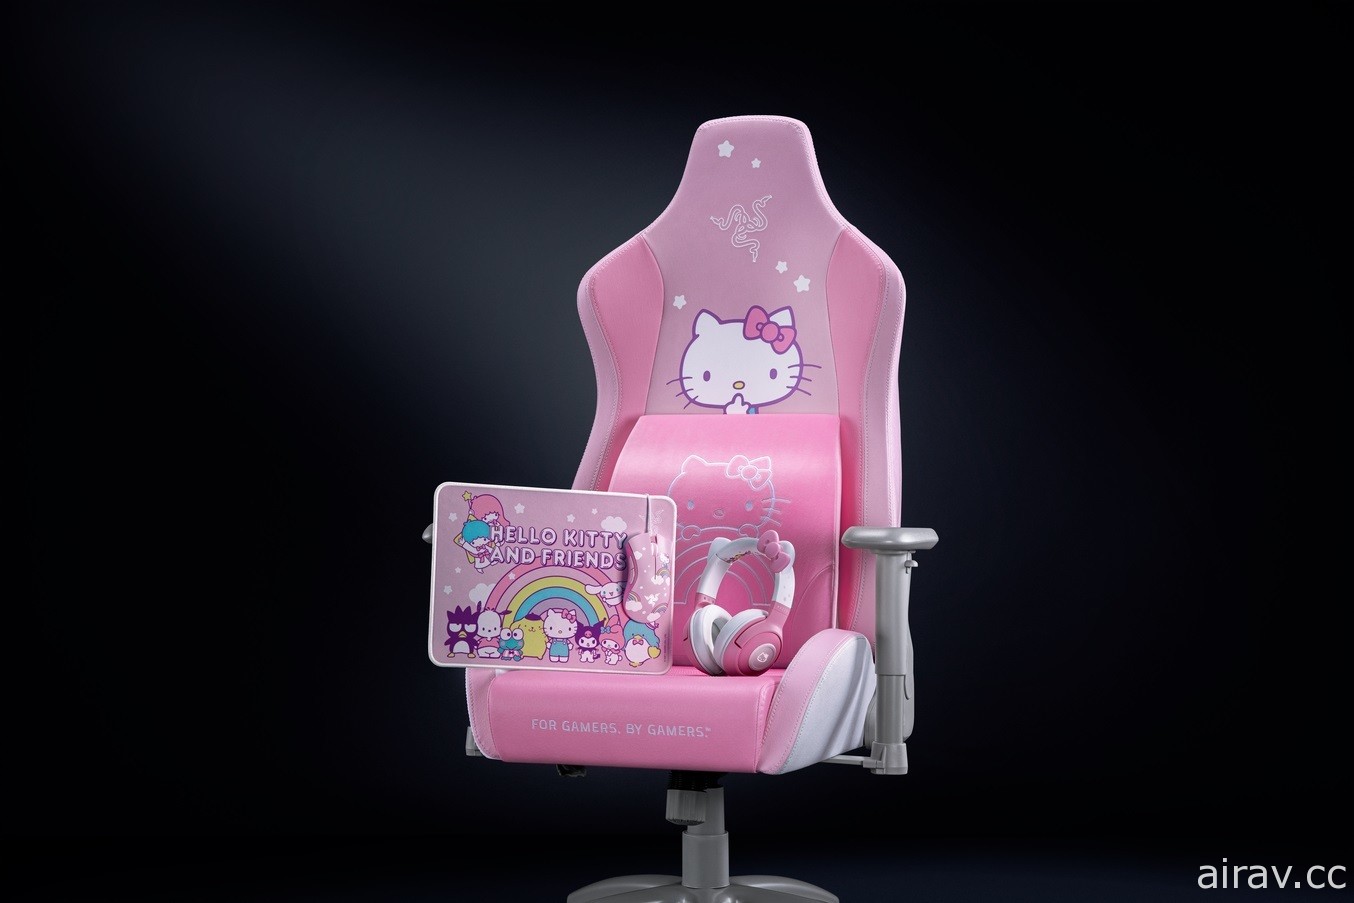 Razer 推出 HELLO KITTY AND FRIENDS 聯名系列產品 貓耳電競耳機、粉嫩電競椅亮相